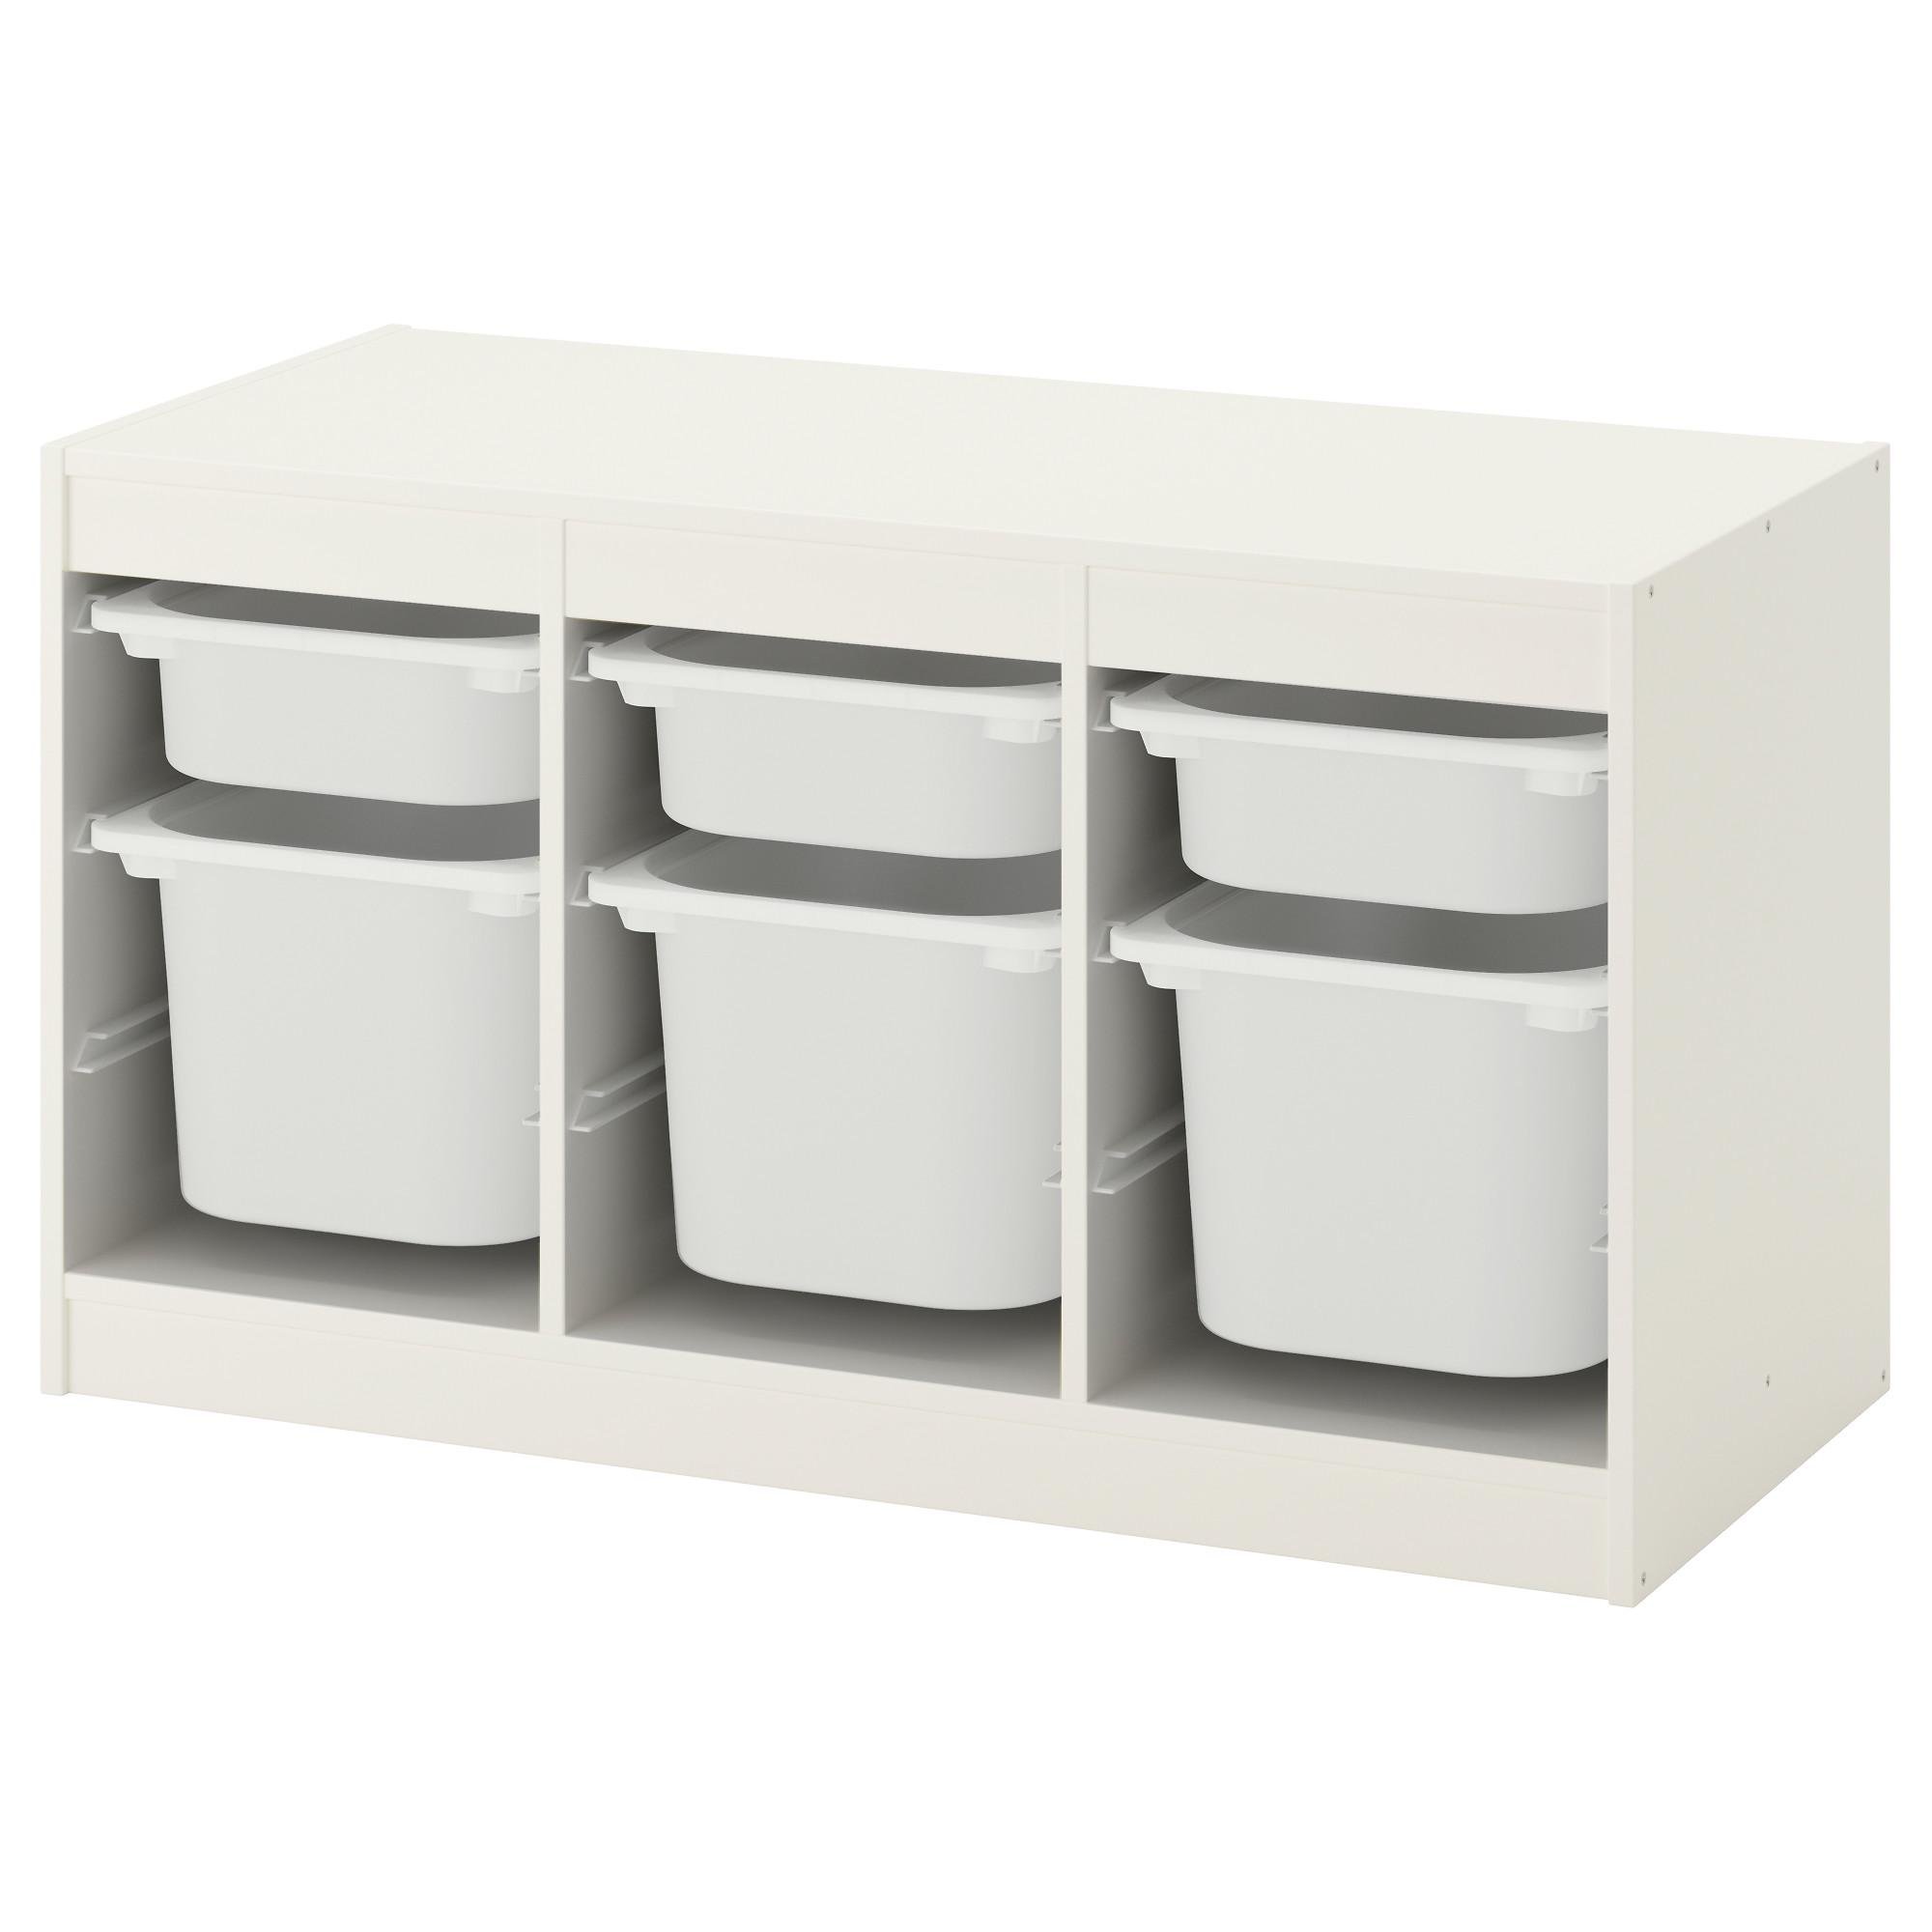 Стеллаж для хранения игрушек IKEA TROFAST с контейнерами Белый (692.284.73)